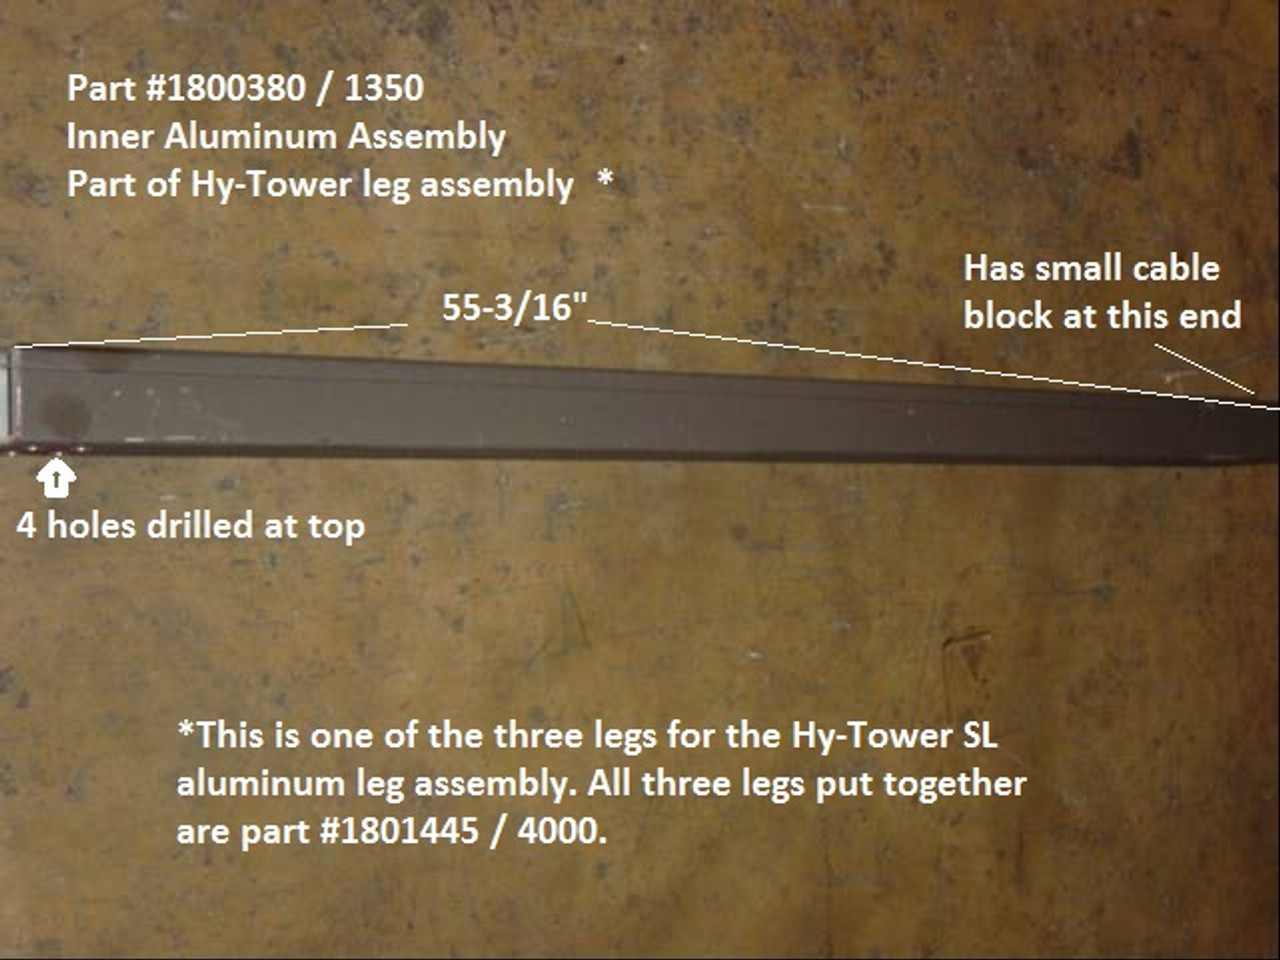 Leg Assembly, Inner, Aluminum (20-1350/1800380)